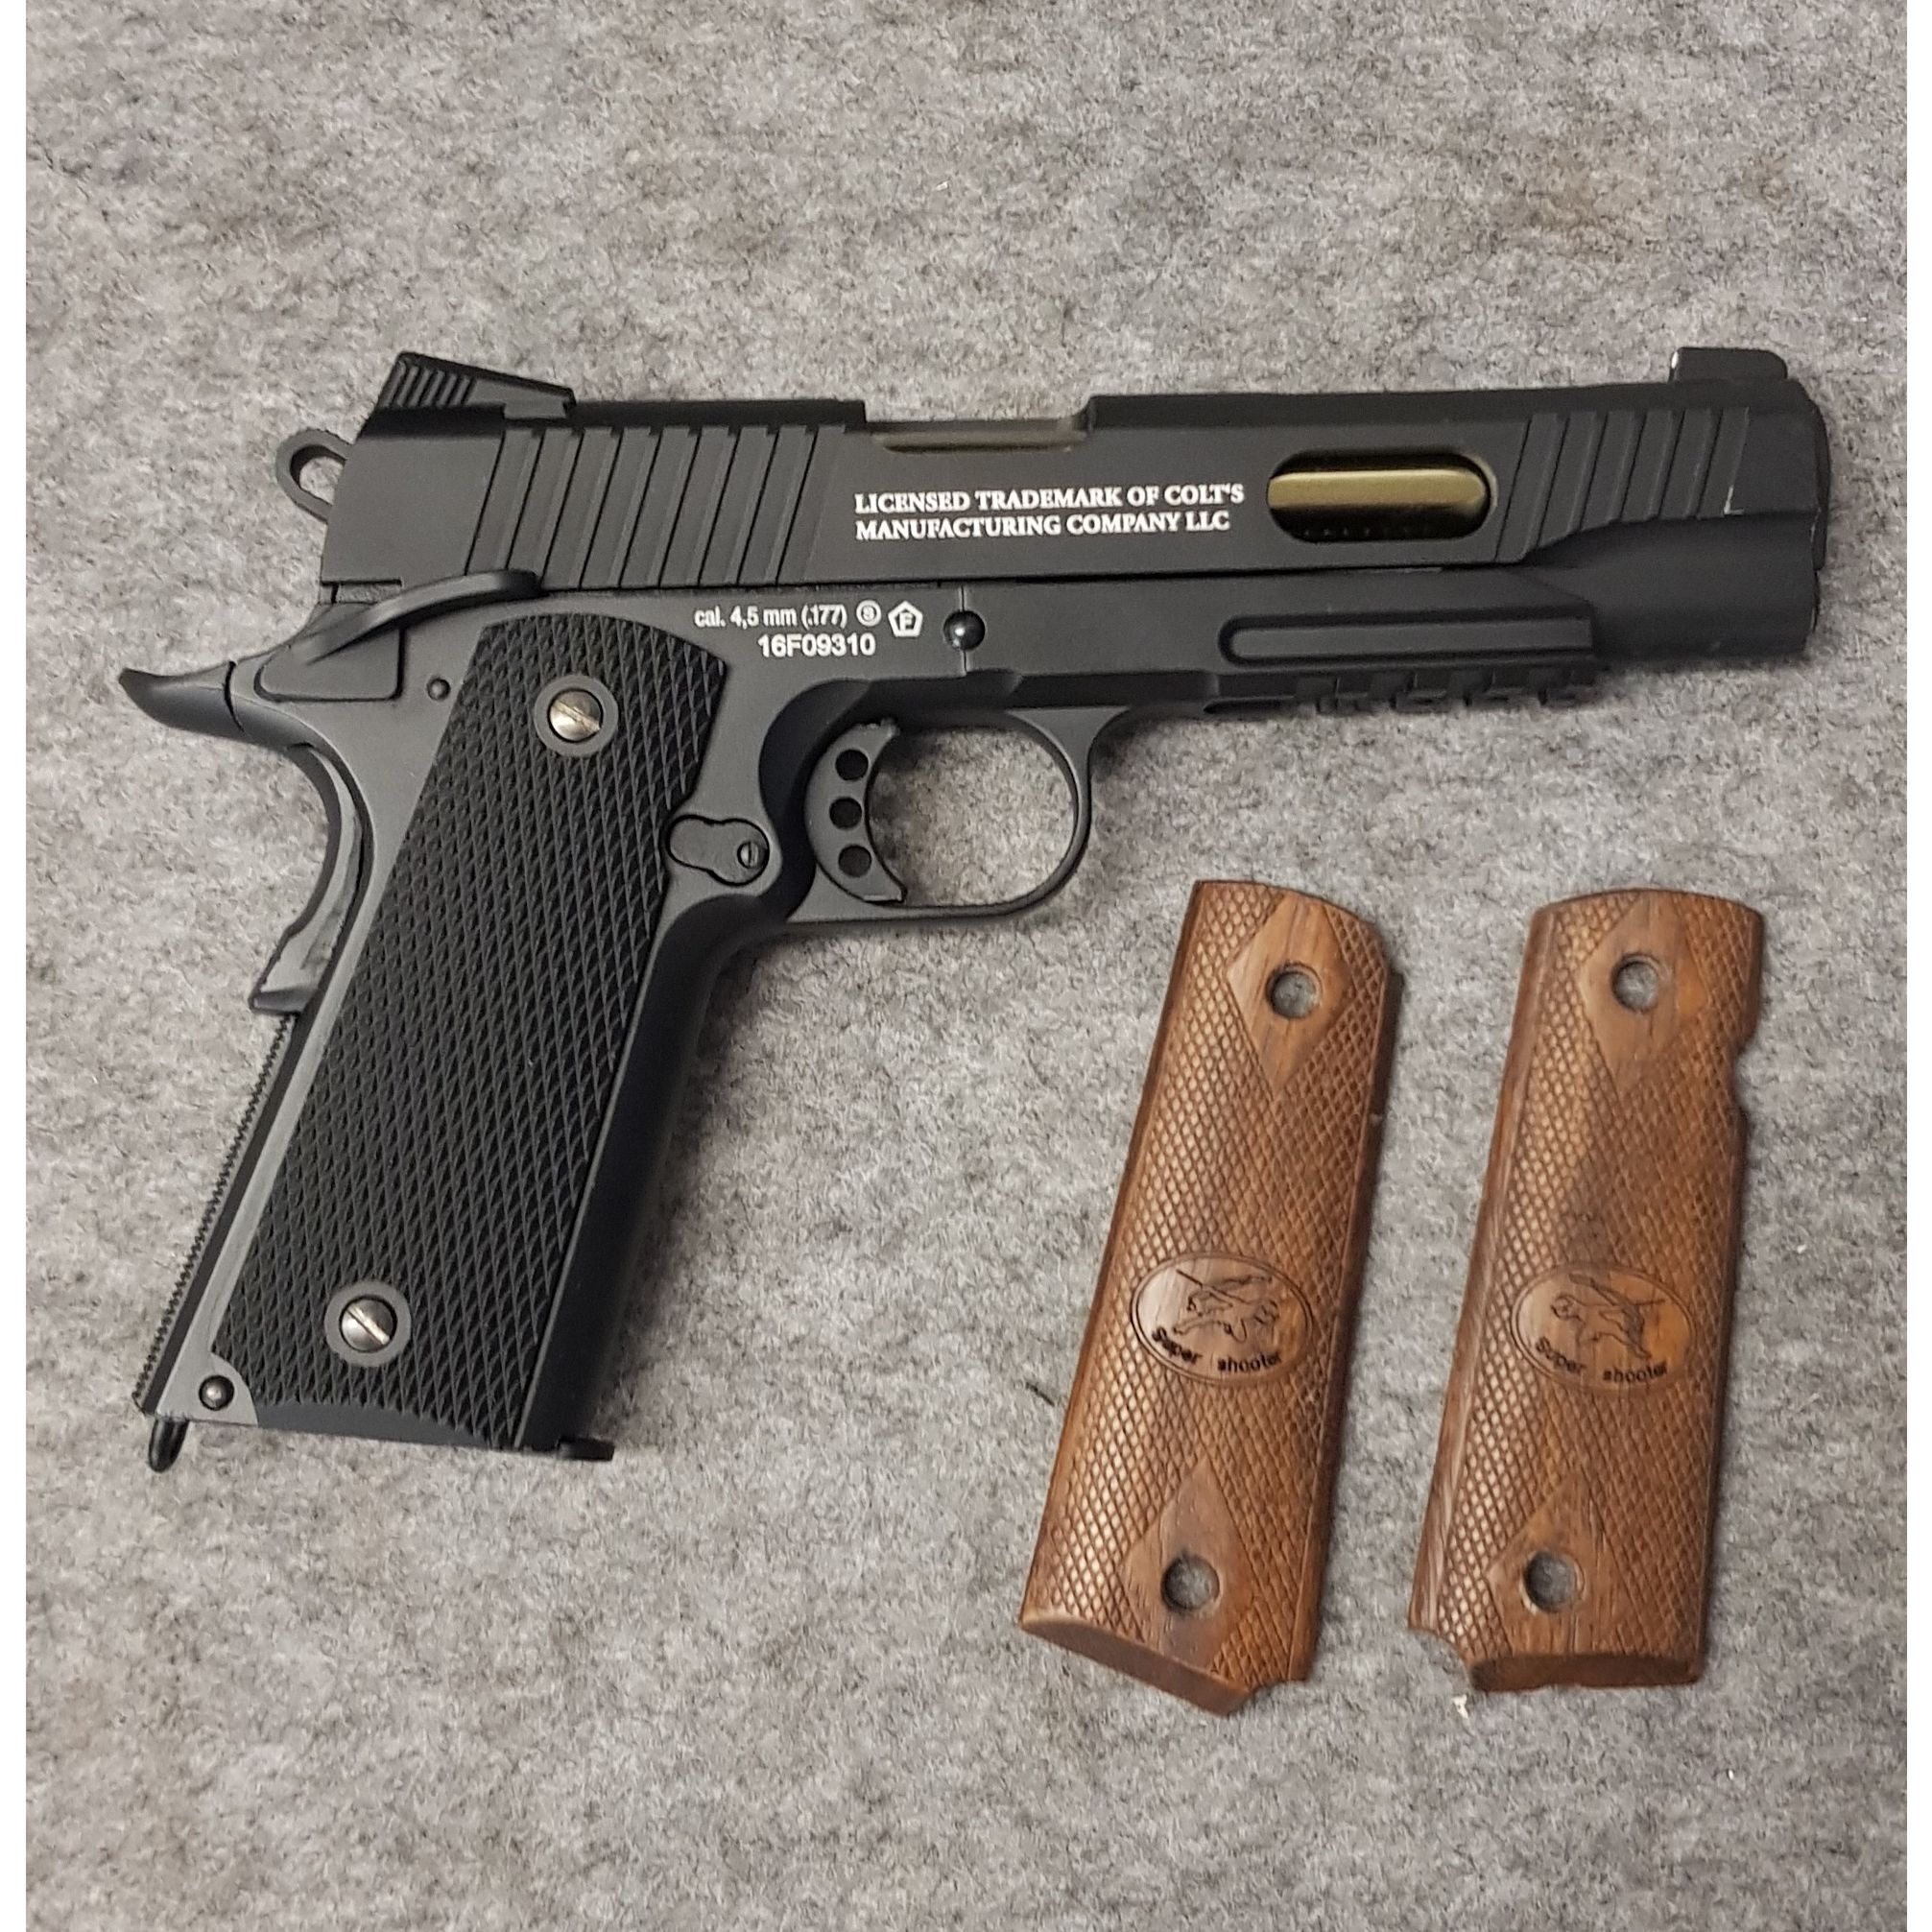 Colt 1911 Custom Umarex Co2 Pistole 4,5mm BB Blowback Ganzmetall Ausführung 930gr. nicht mehr im Handel erhältlich  